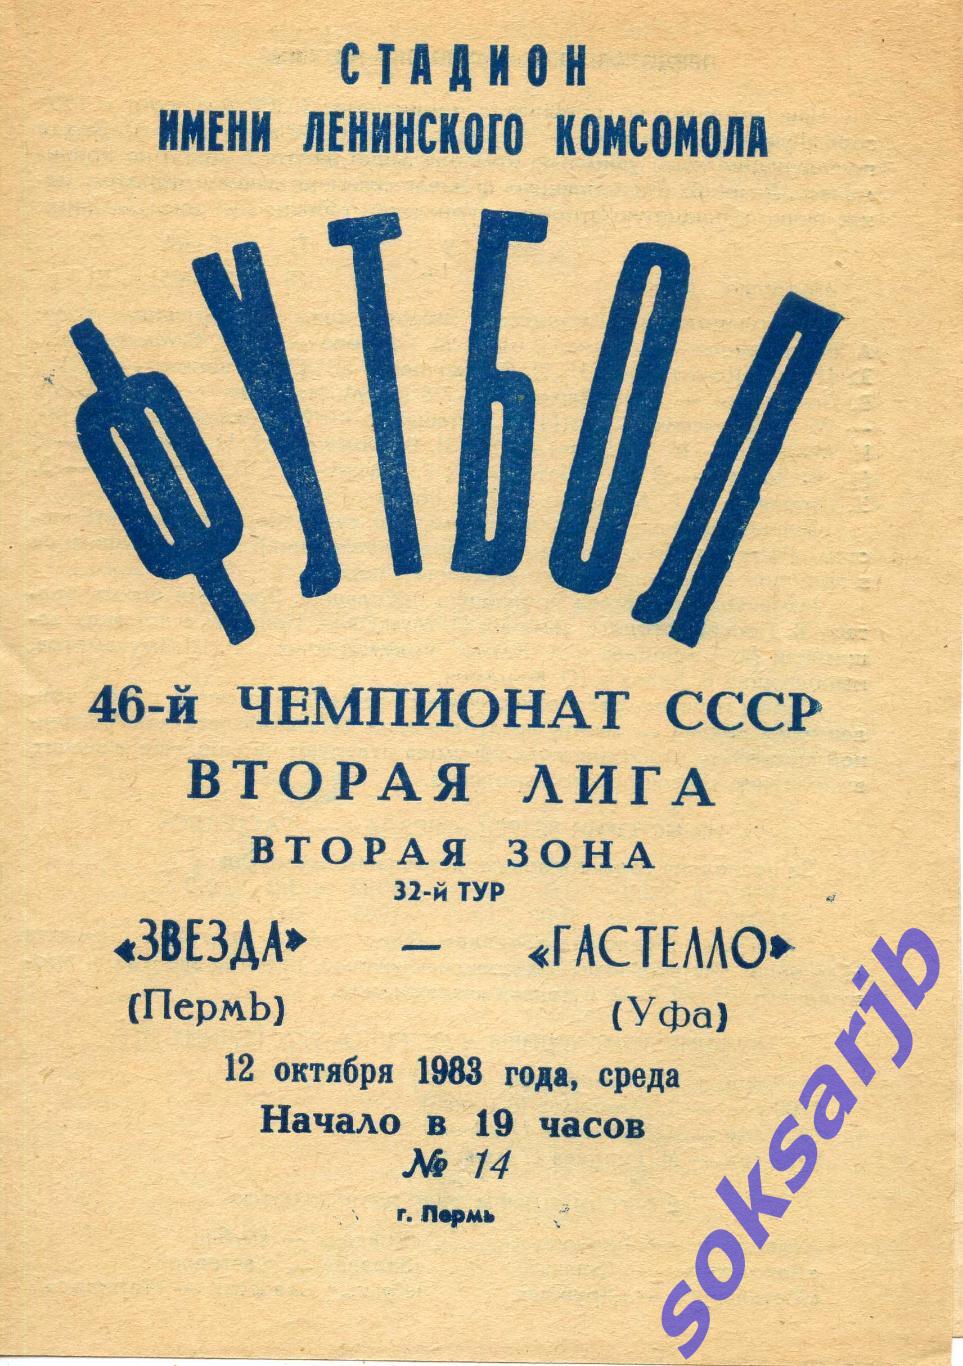 1983.10.12. Звезда Пермь - Гастелло Уфа.